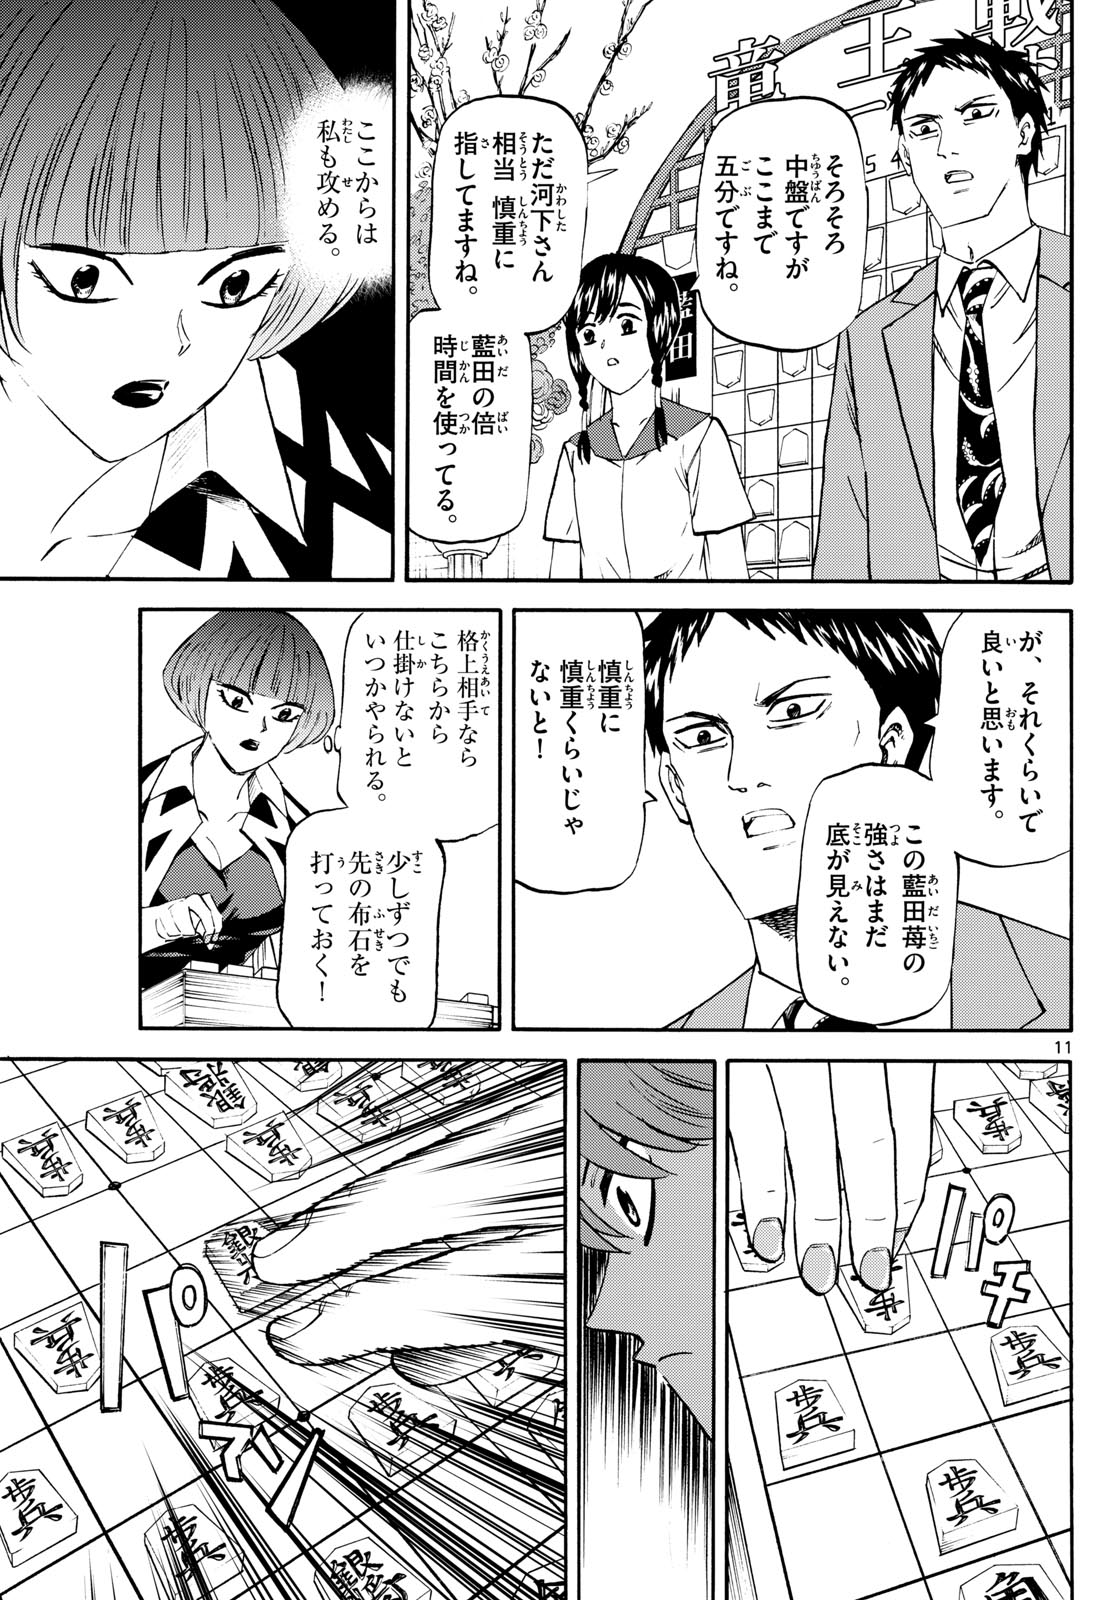 Tatsu to Ichigo - Chapter 200 - Page 11